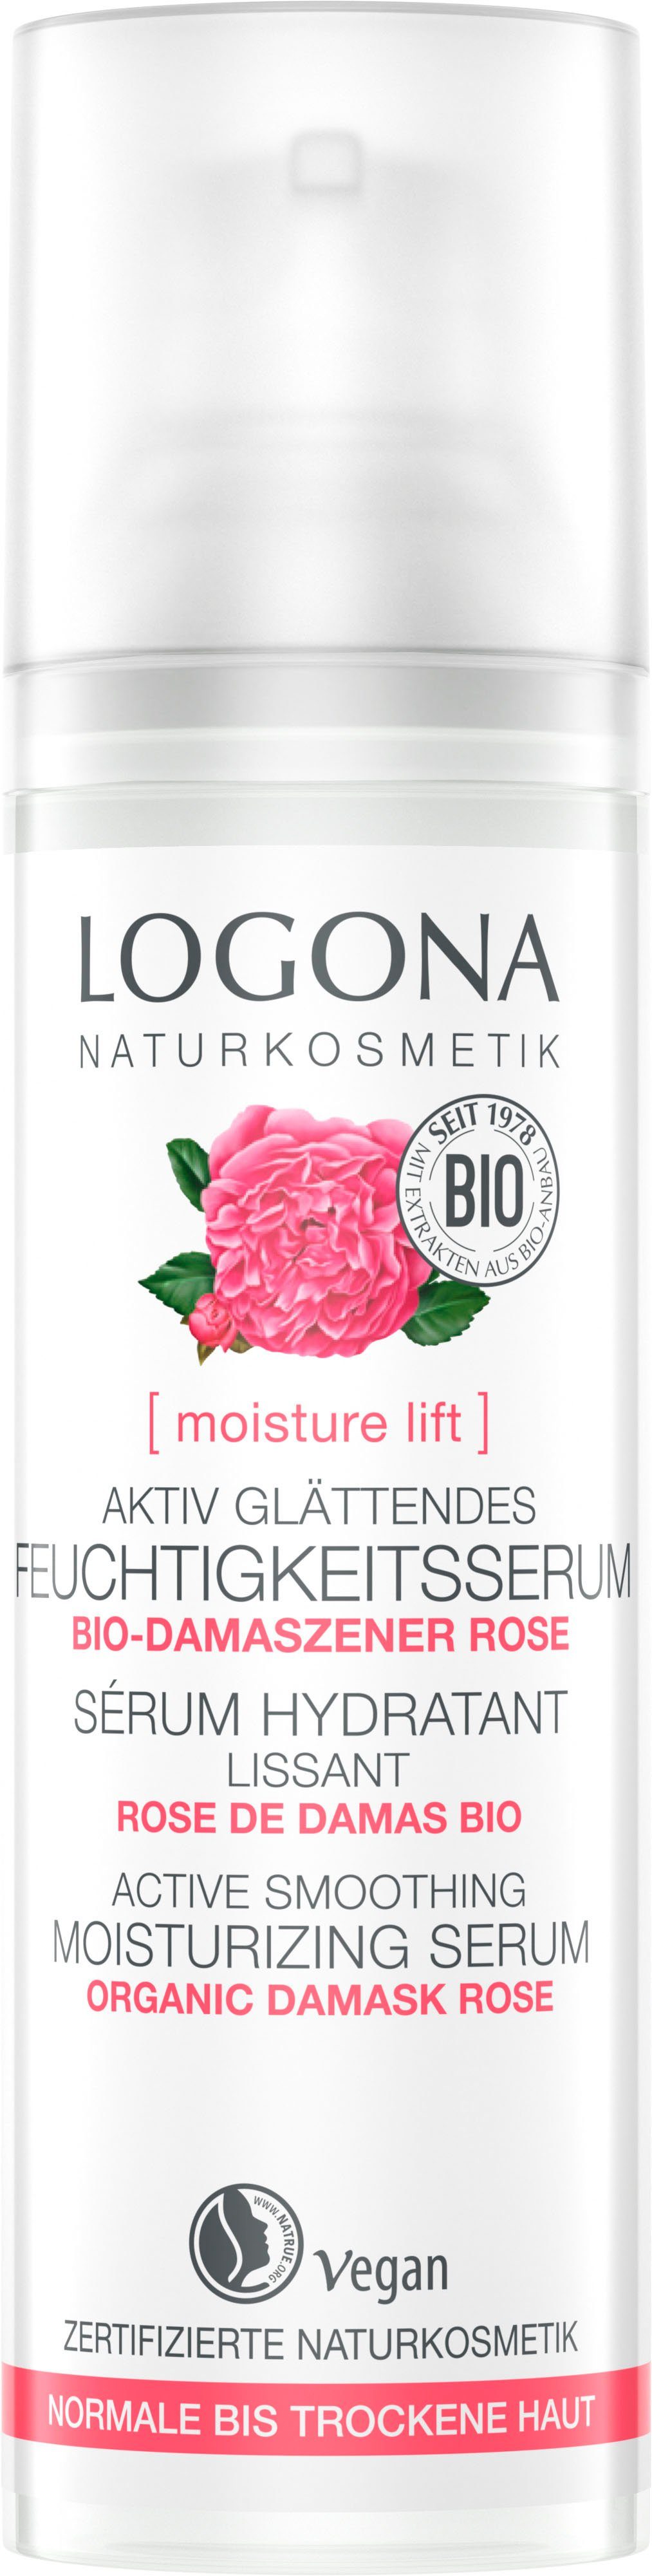 LOGONA Gesichtsserum Logona moisture lift glätt Feuchtigk.serum | Gesichtsseren